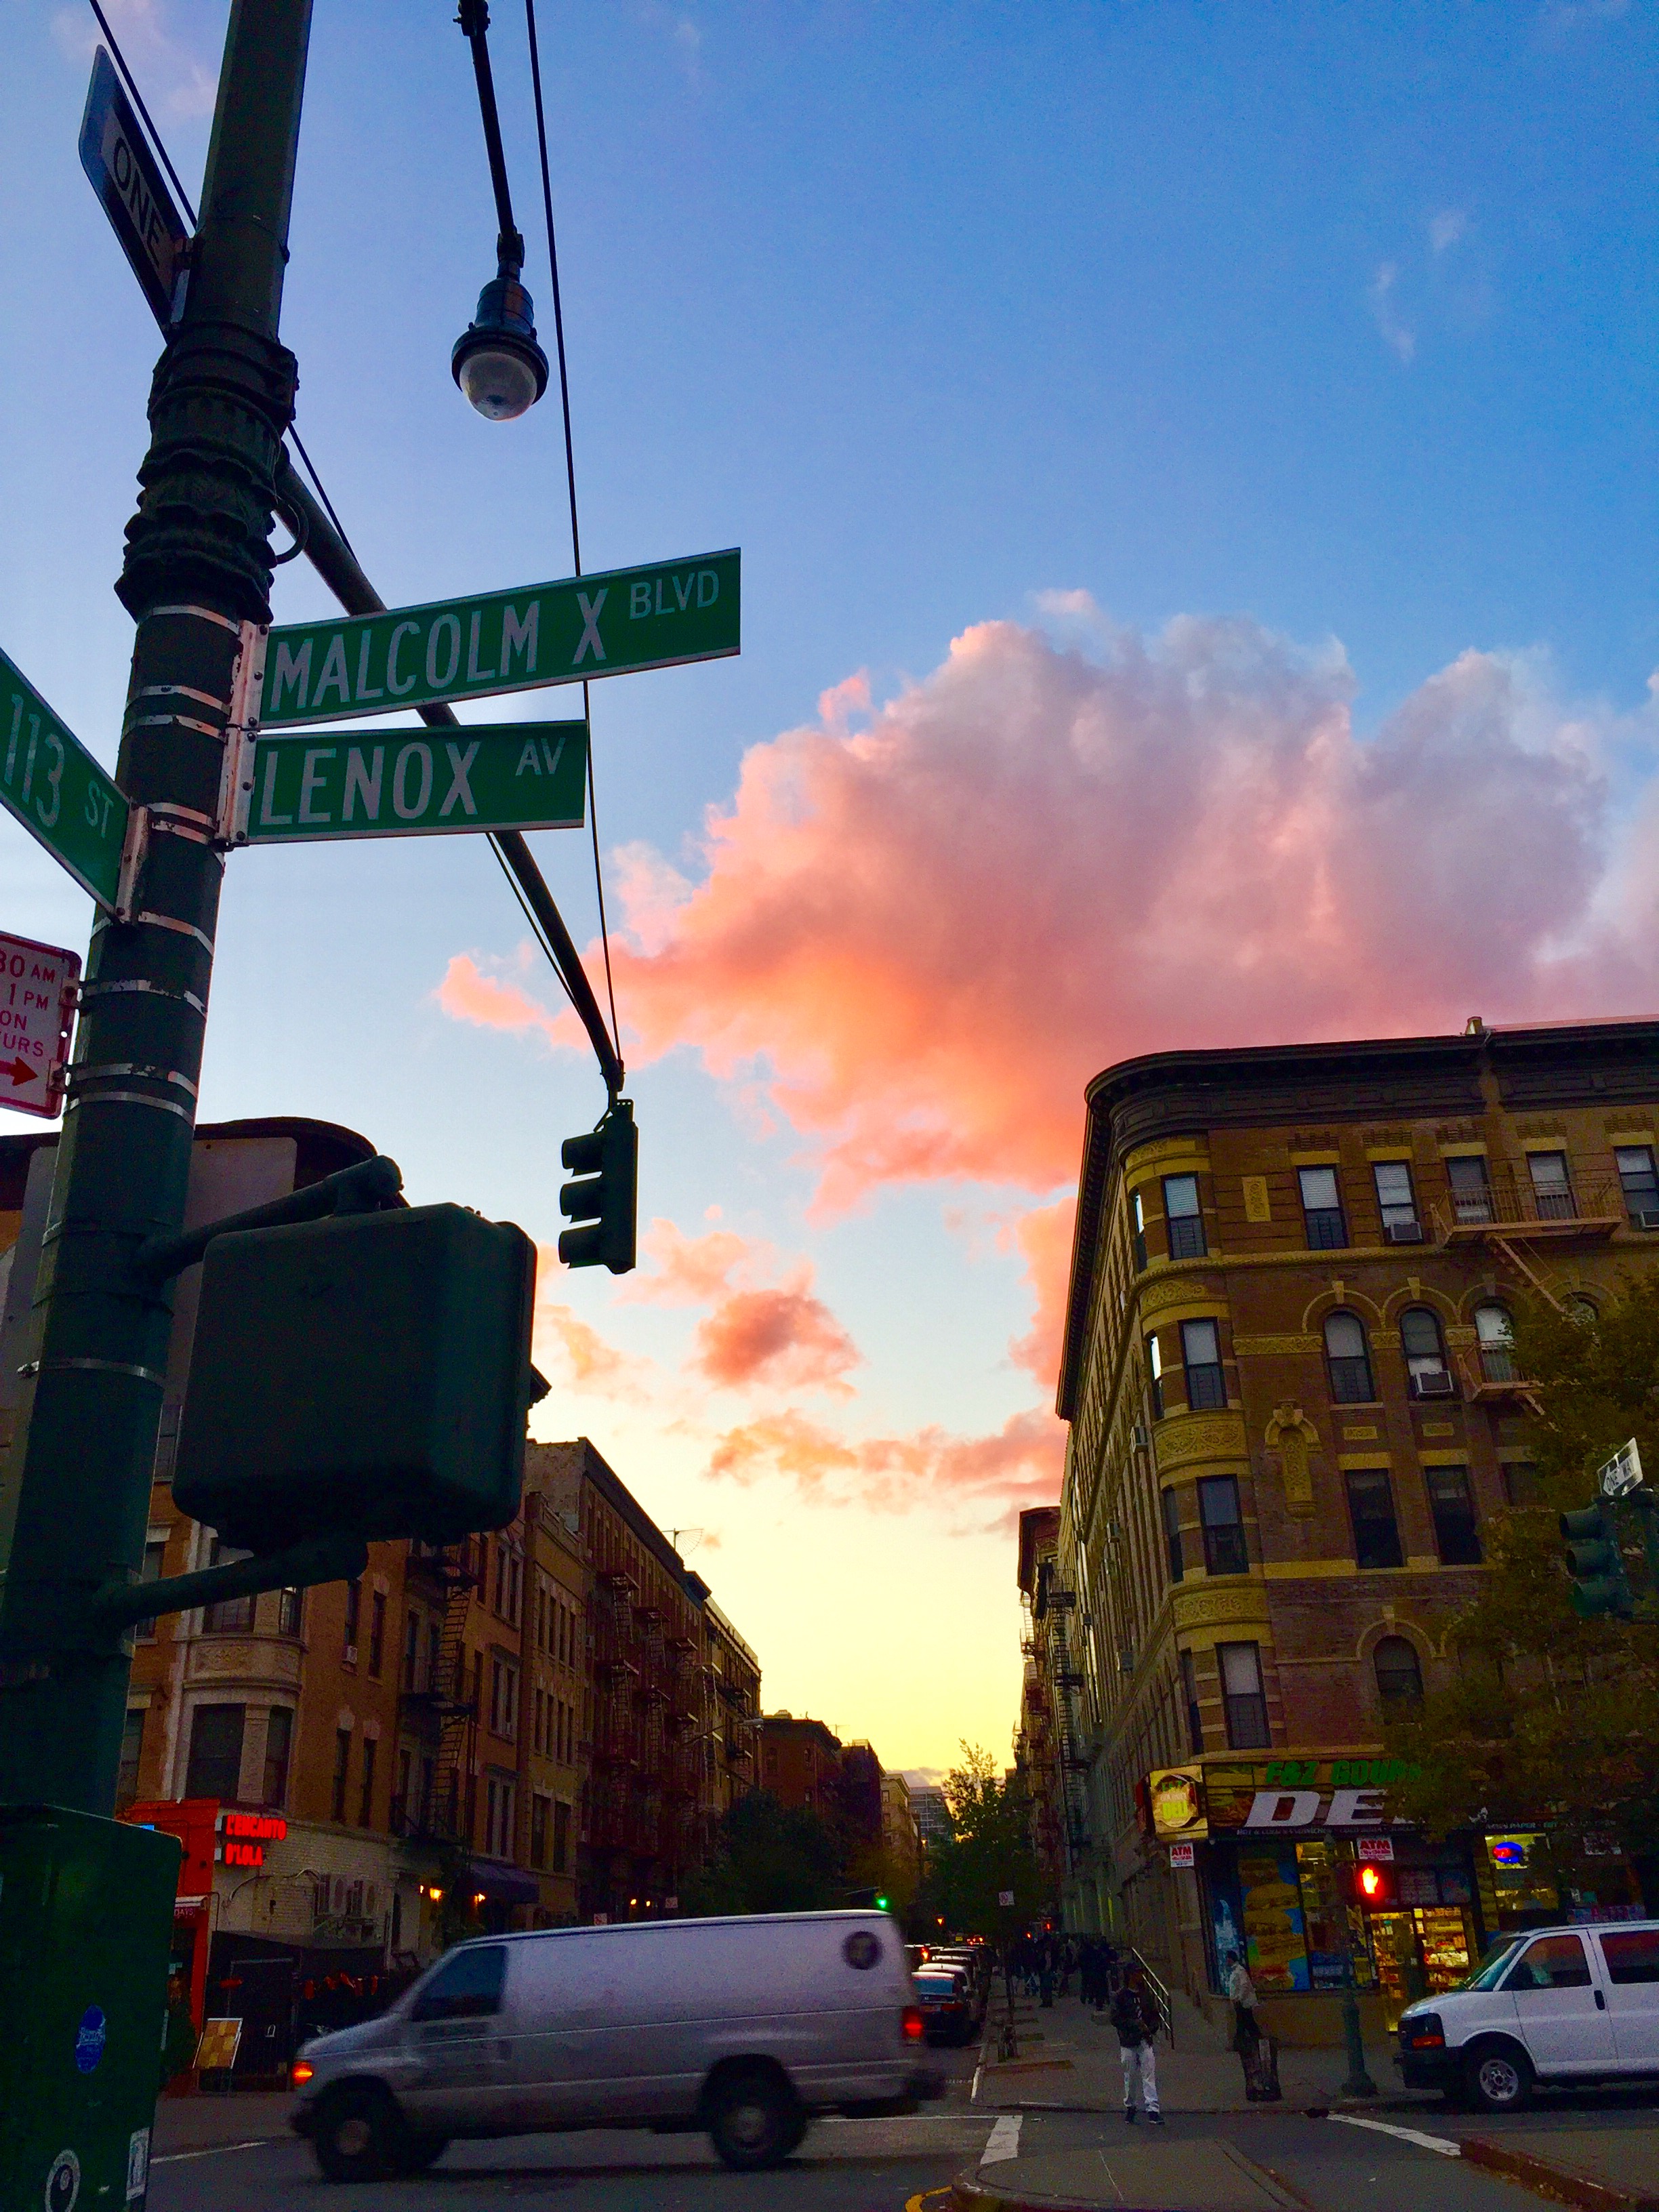 Harlem at dusk